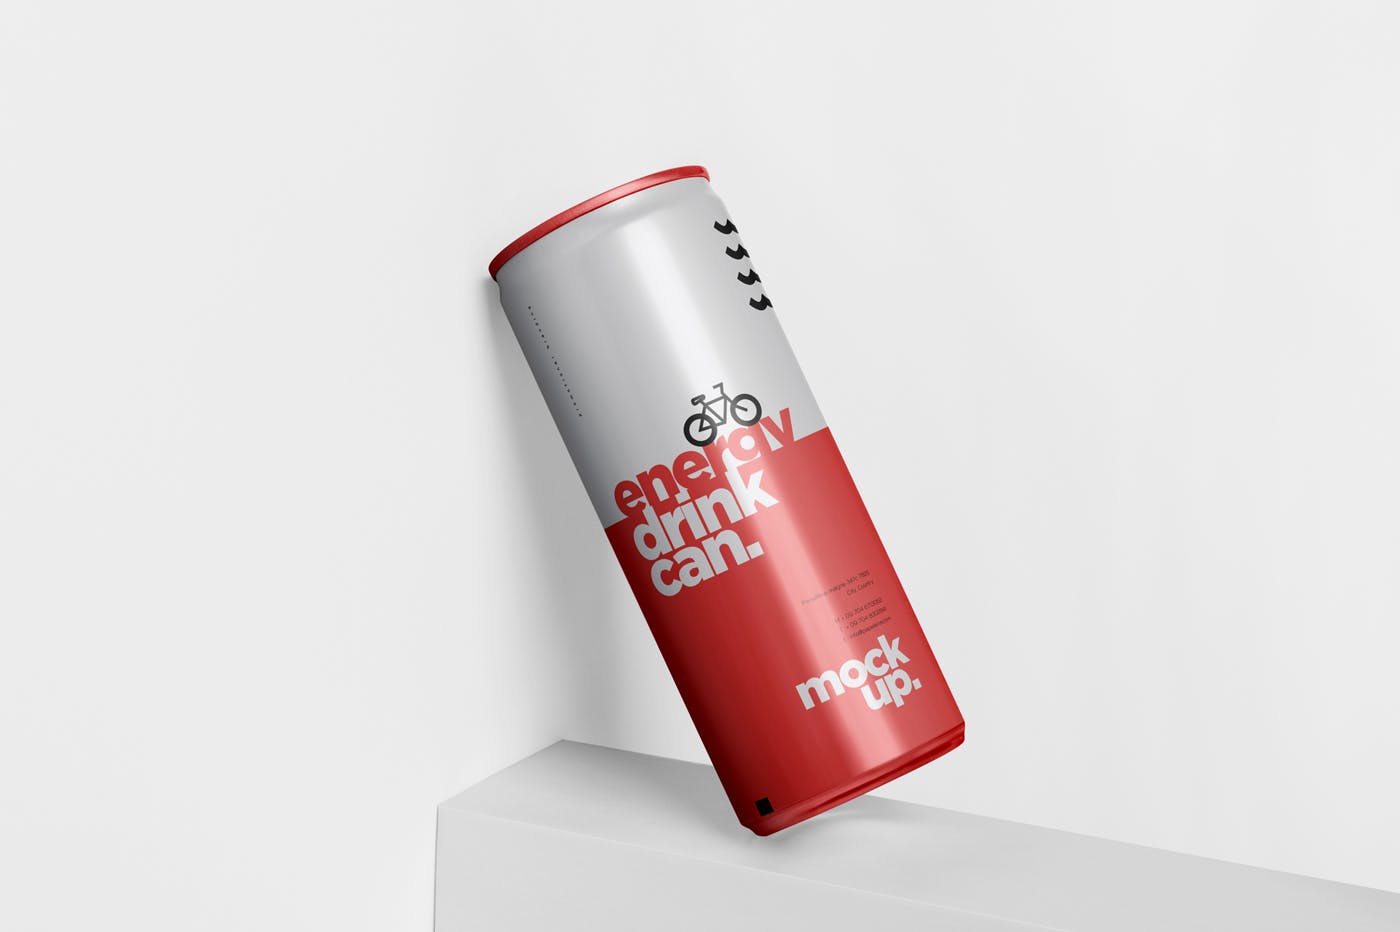 能量饮料易拉罐罐头外观设计素材库精选模板 Energy Drink Can Mock-Up – 250 ml插图(3)